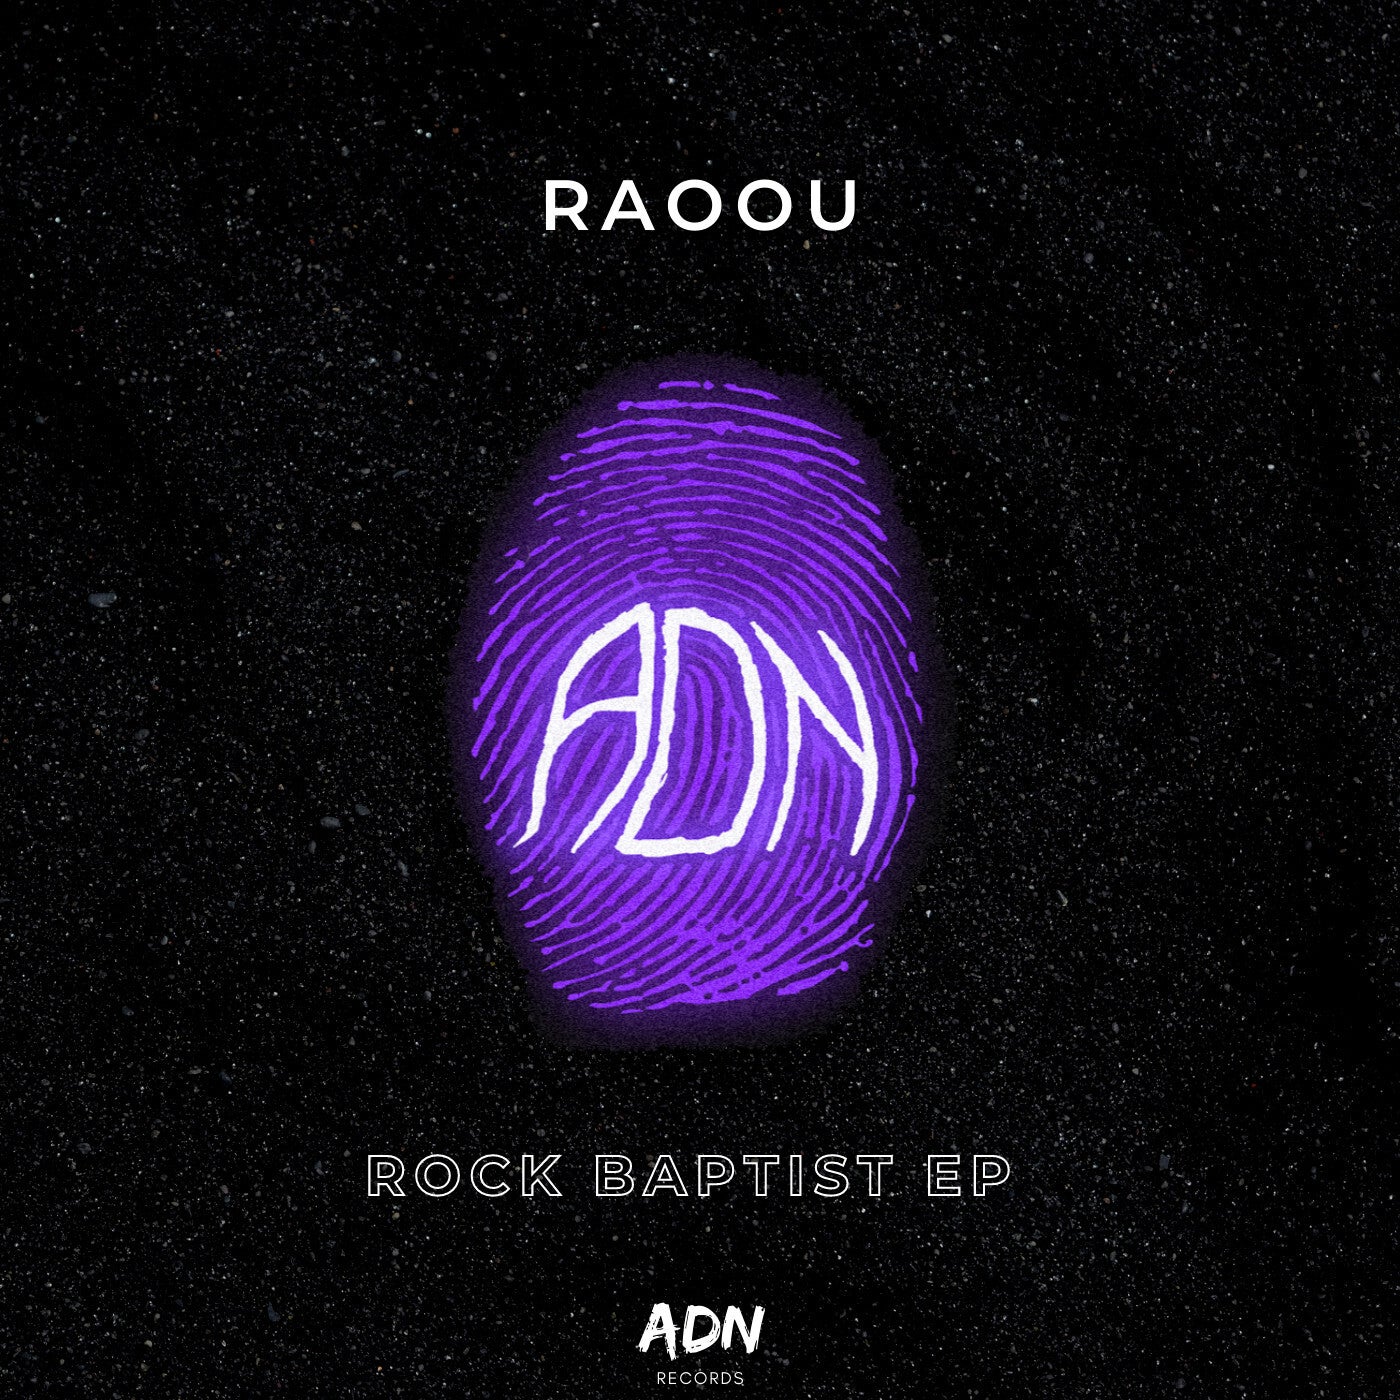 Rock Baptist EP